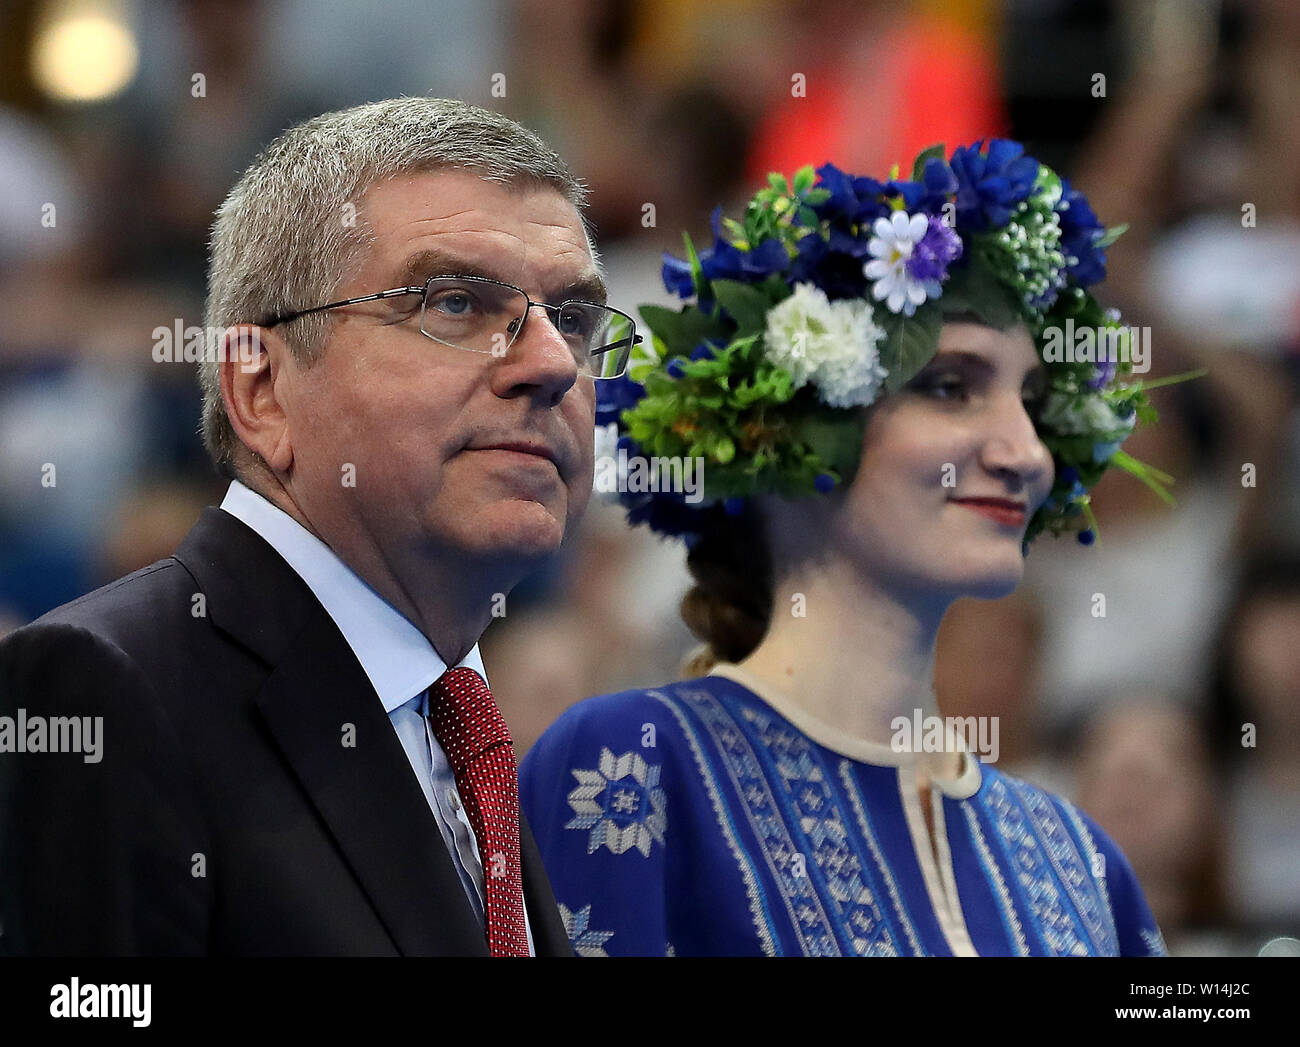 Thomas Bach, président du Comité International Olympique attend à présent les médailles à la gymnastique, au cours de dix jours de l'Games 2019 à Minsk. Banque D'Images